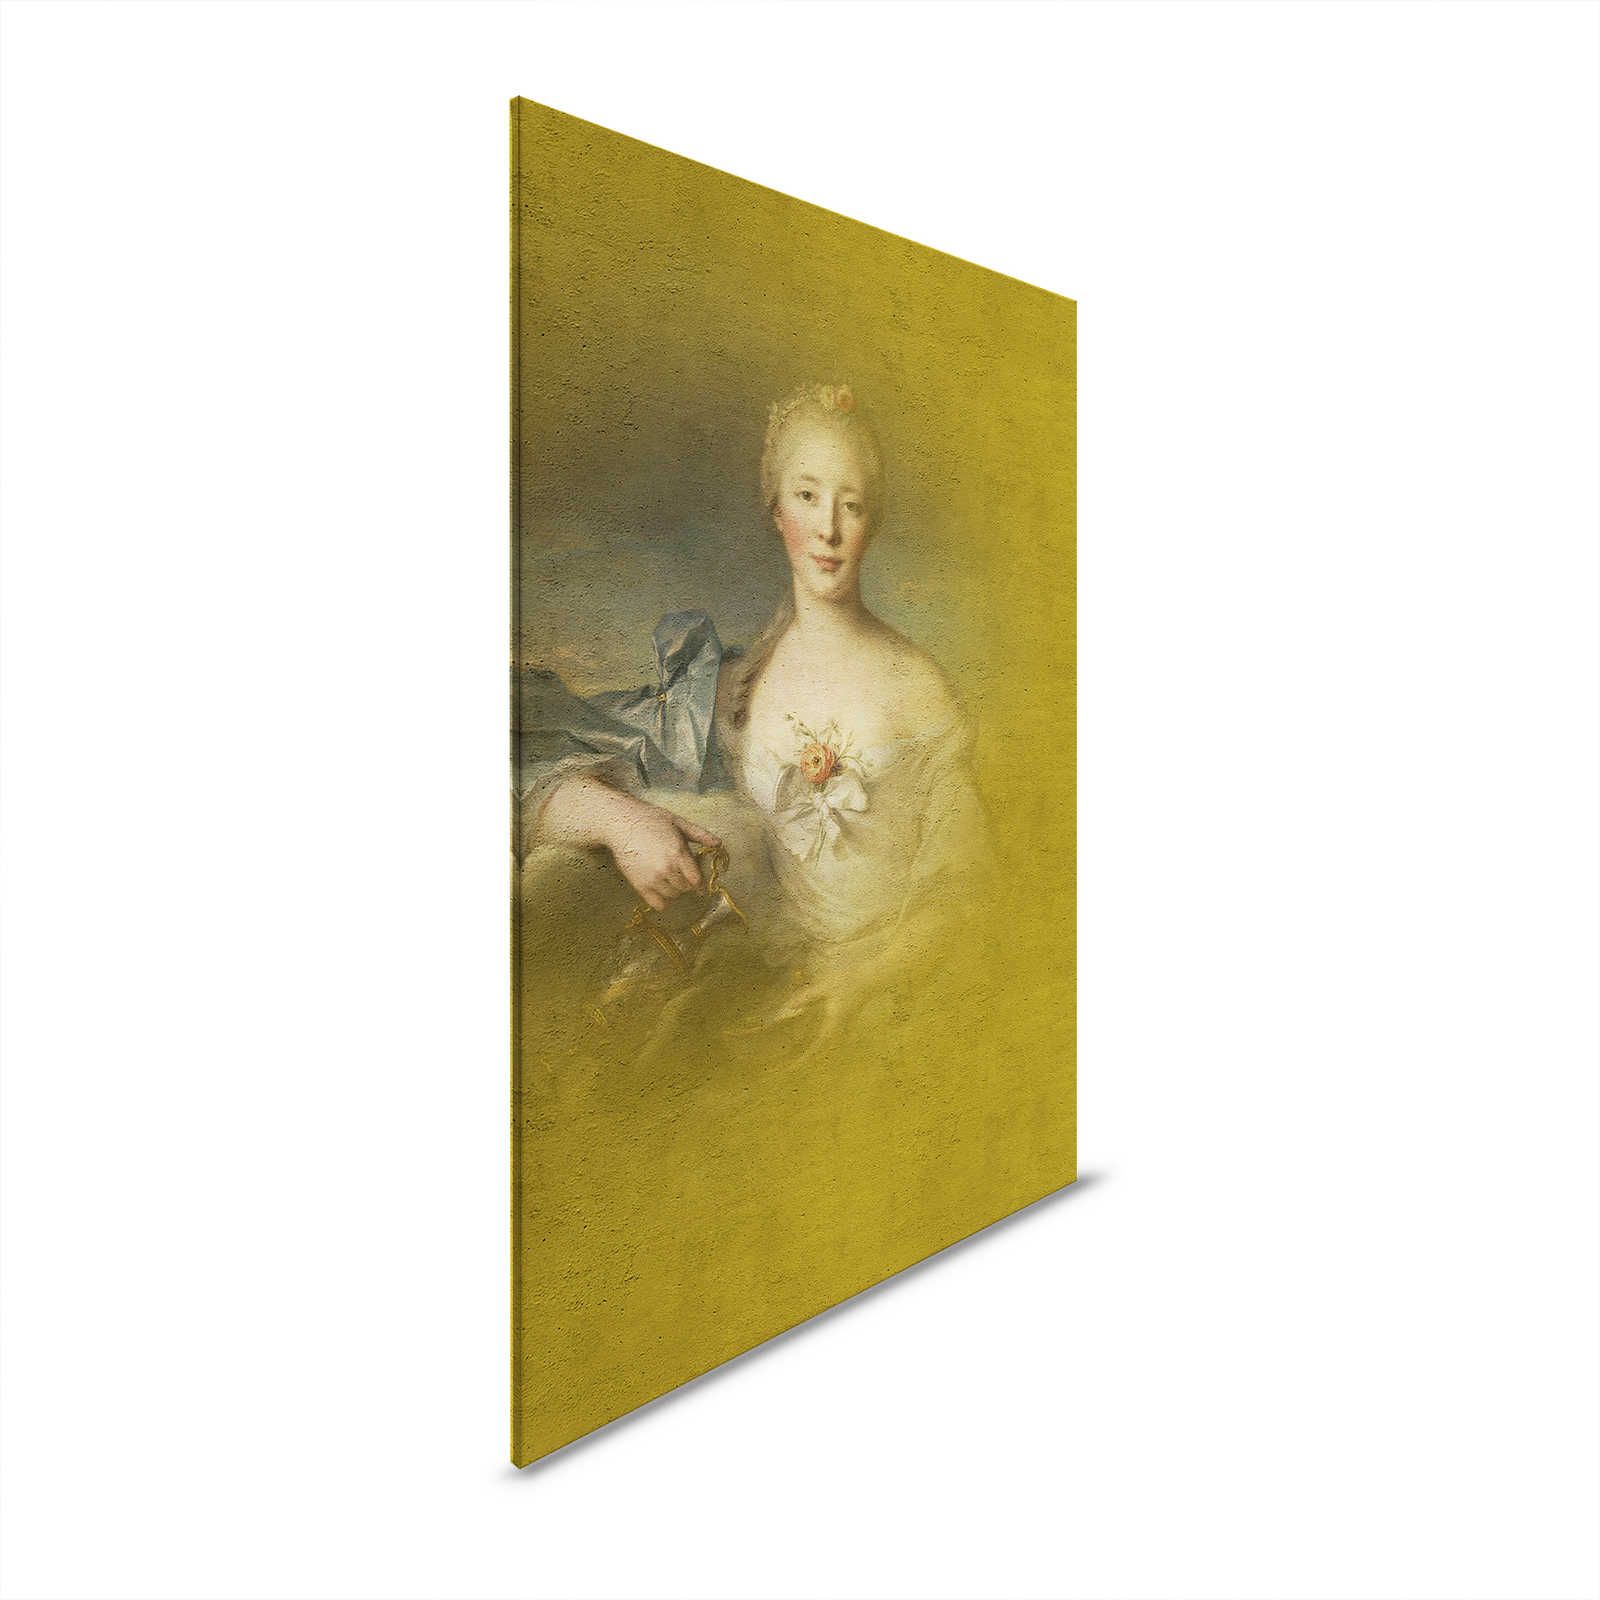 Quadro su tela con ritratto classico di giovane donna - 0,80 m x 1,20 m
